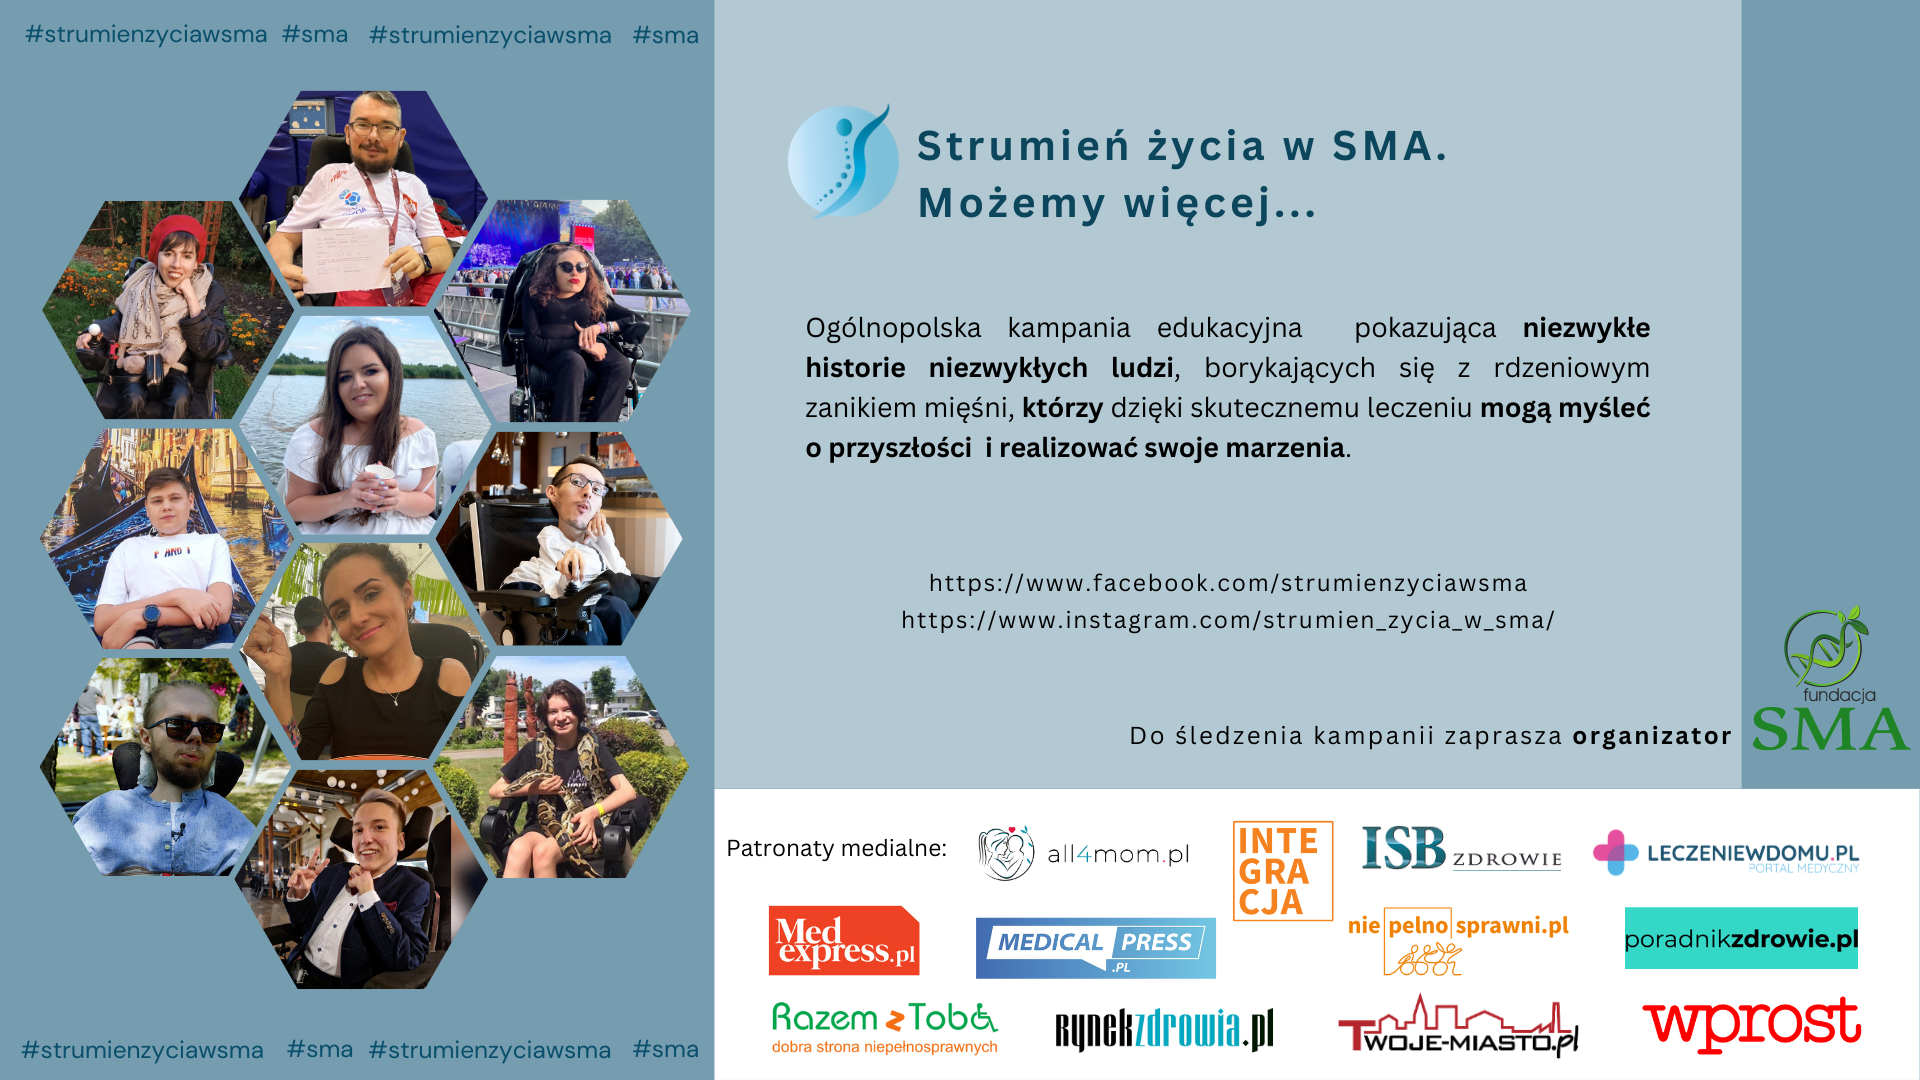 „Strumień życia w SMA” – kontynuacja ogólnopolskiej kampanii edukacyjnej z tegorocznym mottem przewodnim – „Możemy więcej…”